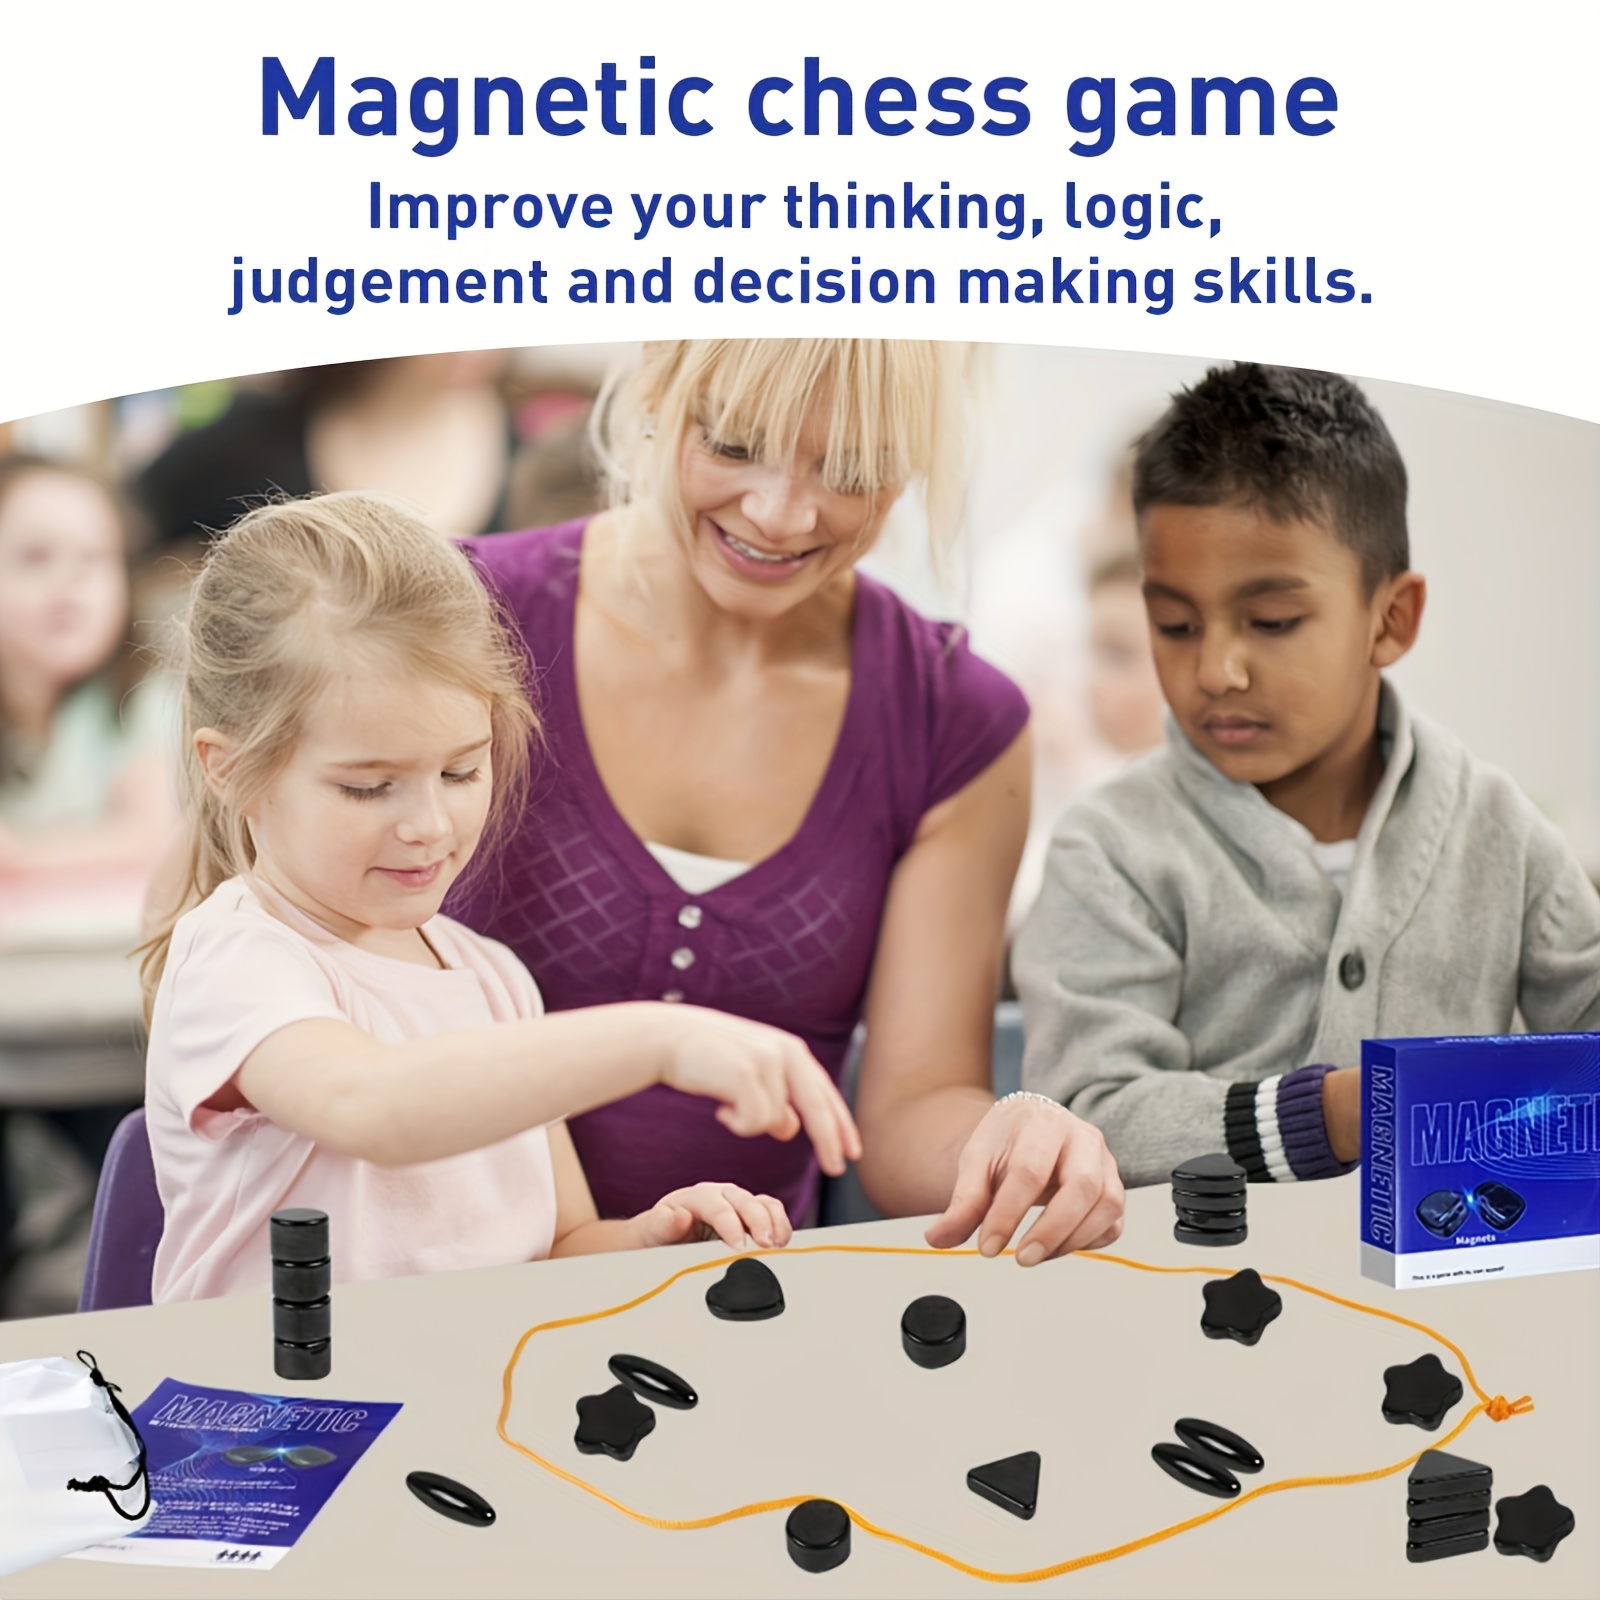 Kluster Jeu d'aimant, jeu d'échecs magnétique, jeu de stratégie magnétique  avec corde, jeu de rock magnétique portable pour fête de famille et voyage  (style 2) : : Jeux et Jouets